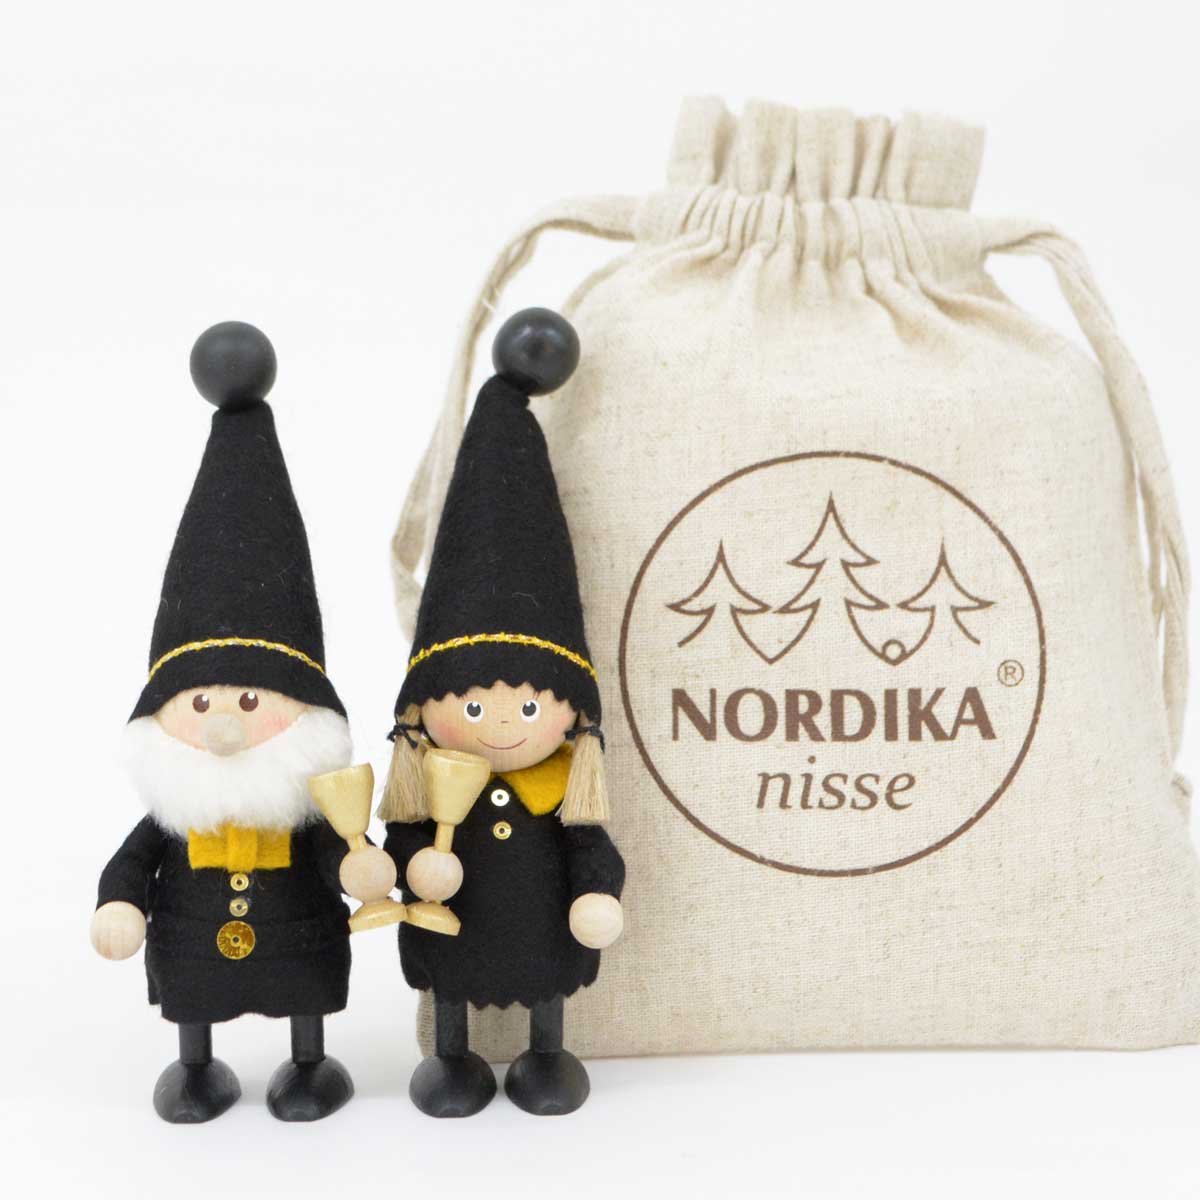 【数量限定】NORDIKA nisse ノルディカ ニッセ クリスマス 木製人形 ( Happy celebrate! 乾杯するニッセ )